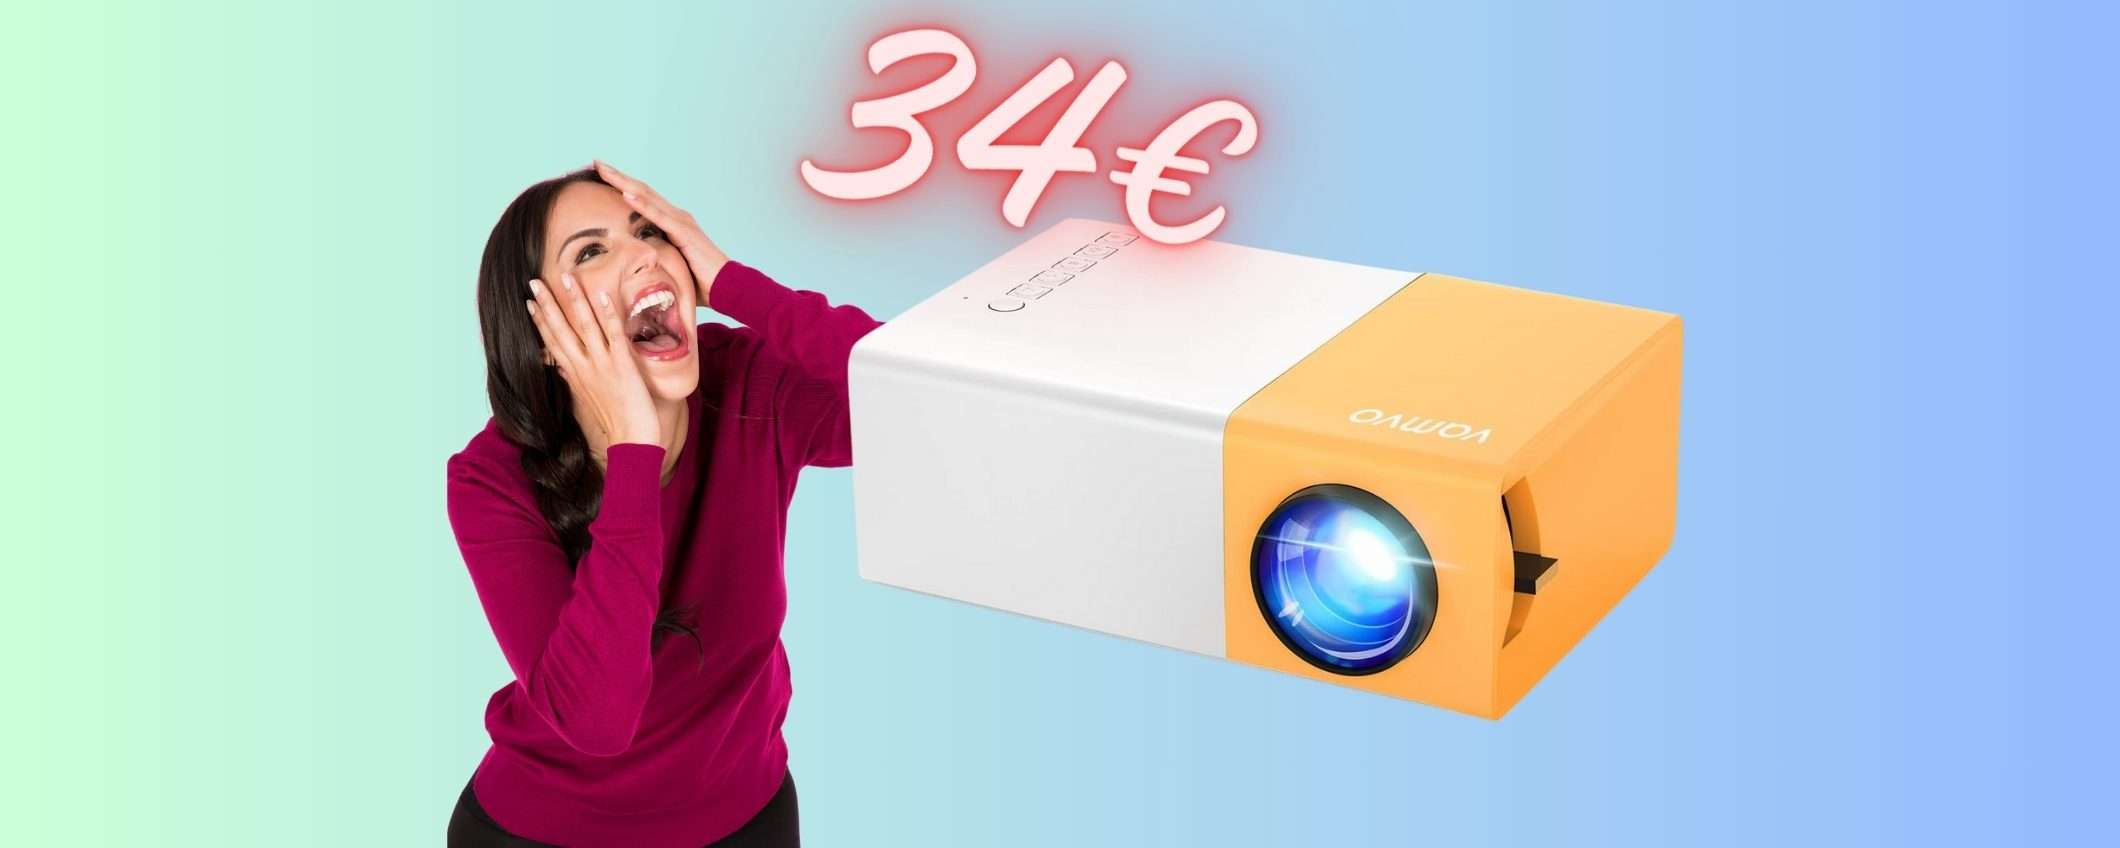 Mini proiettore a PREZZO FUORI di TESTA, solo 34€ su Amazon